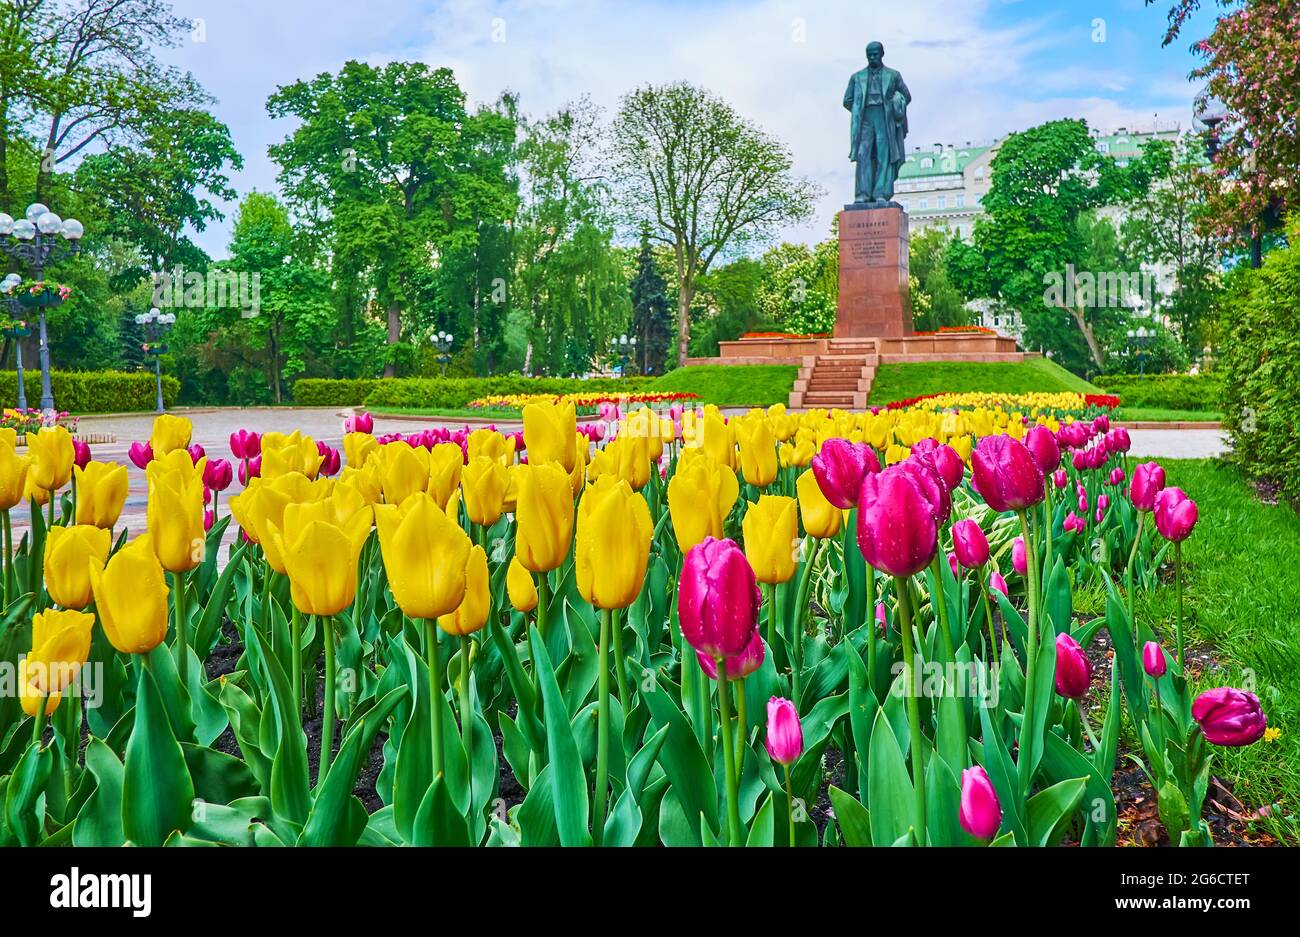 Die Gasse des Taras Shevchenko Parks, gesäumt von blühenden Tulpenblüten, beschnittenen Büschen und üppig grünen Bäumen, ist das Denkmal für Shevchenko zu sehen Stockfoto